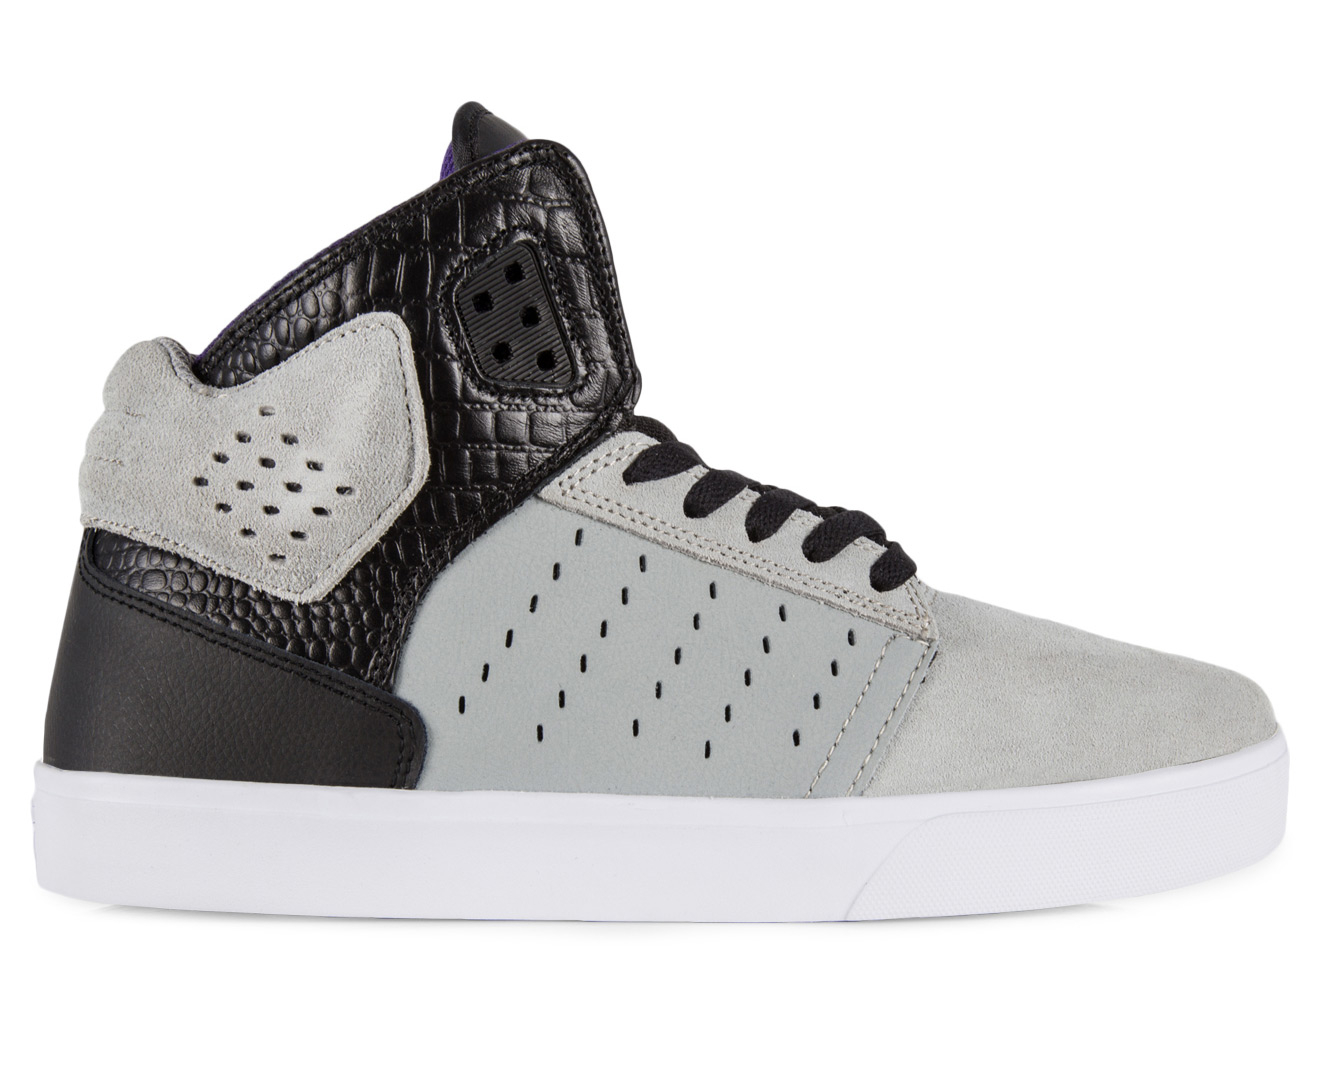 Supra Men's Atom Shoe - Light Grey/Black-White | Catch.com.au